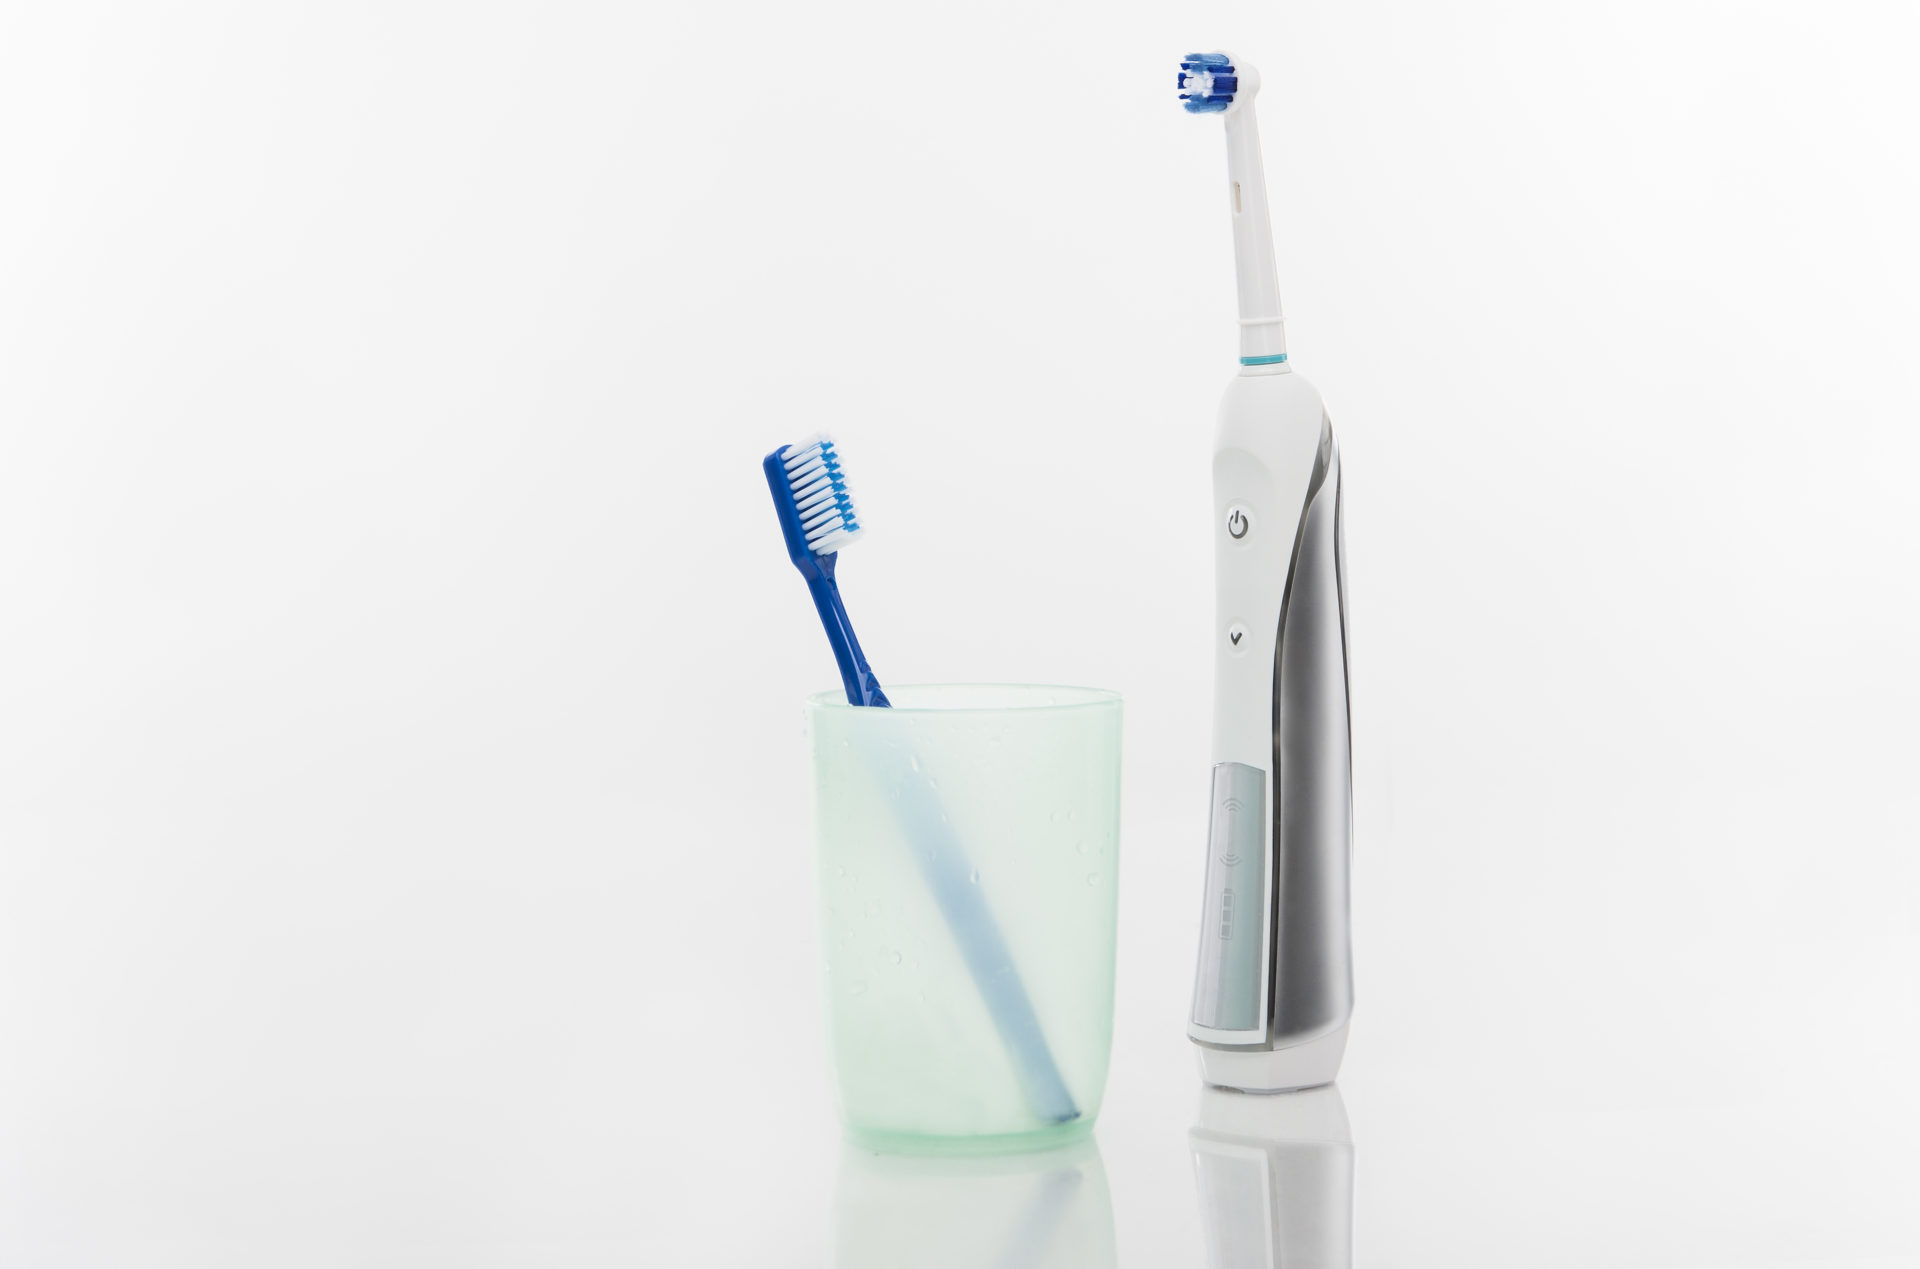 Comparando el cepillo eléctrico con el cepillo de dientes convencional